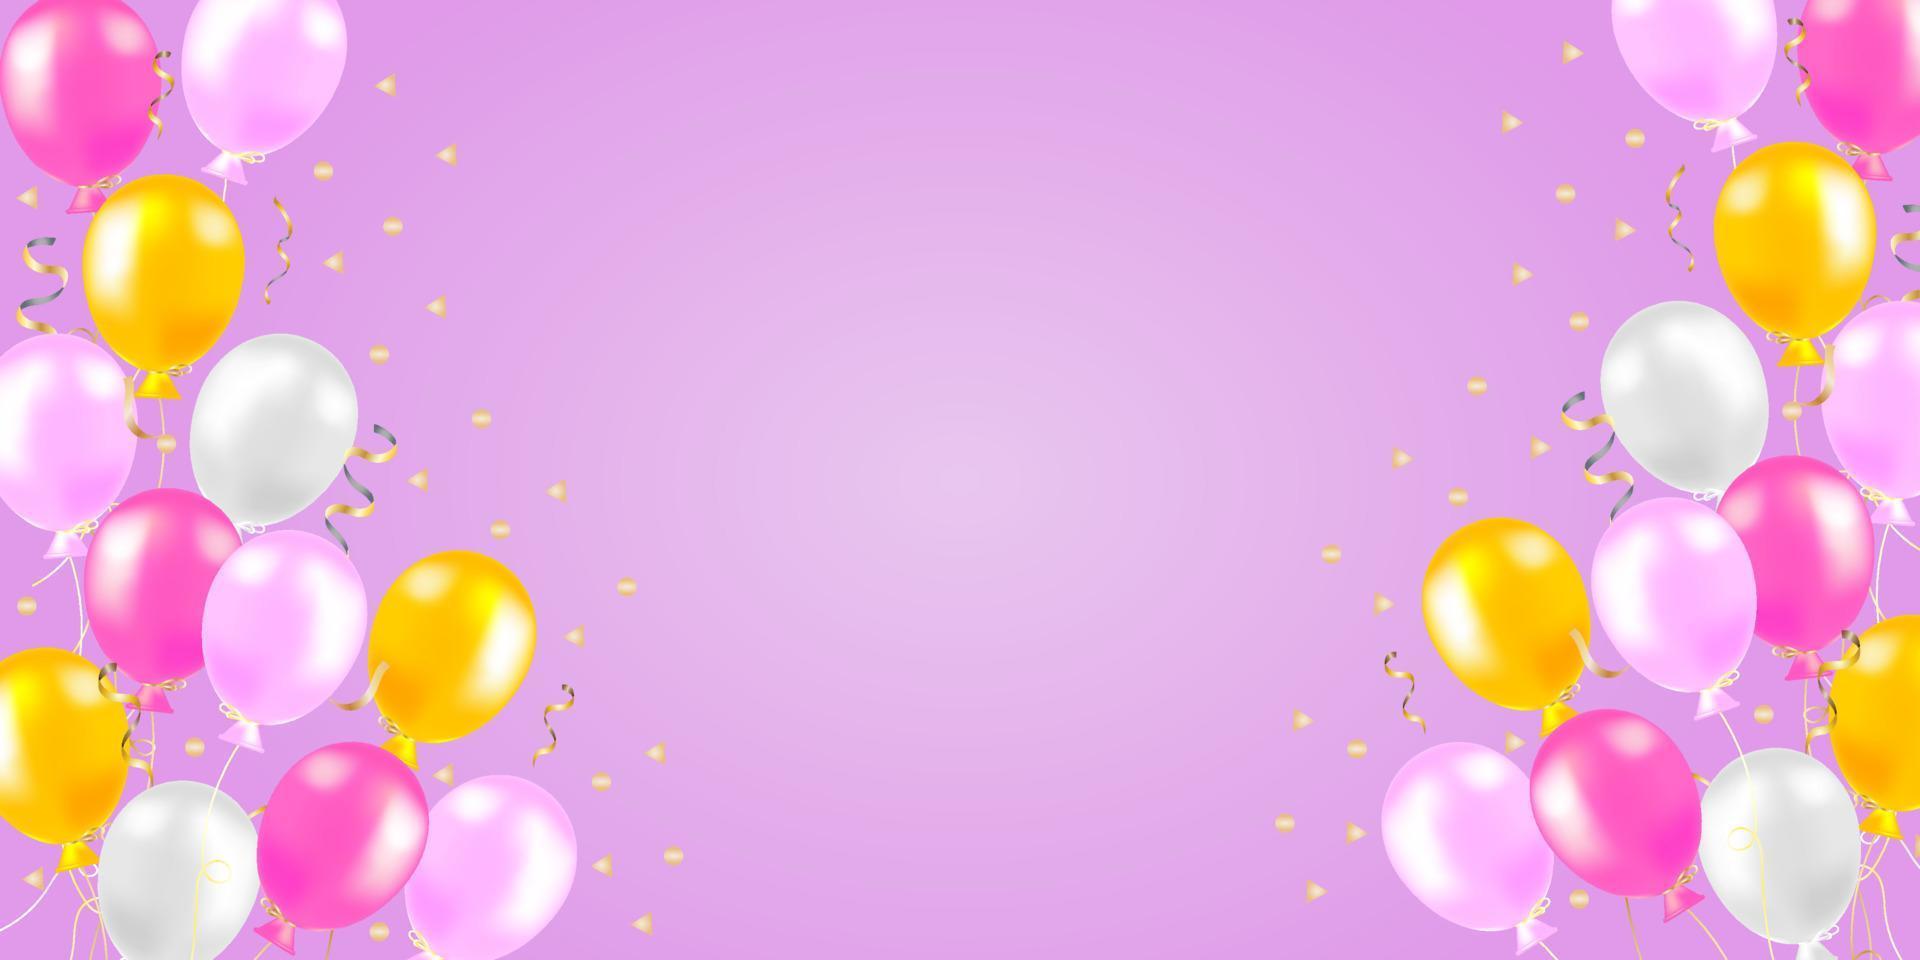 fundo de balões de eventos especiais, balões de ar rosa e amarelo realistas e confetes em fundo rosa. cartão ou banner conceito festivo. ilustração vetorial vetor